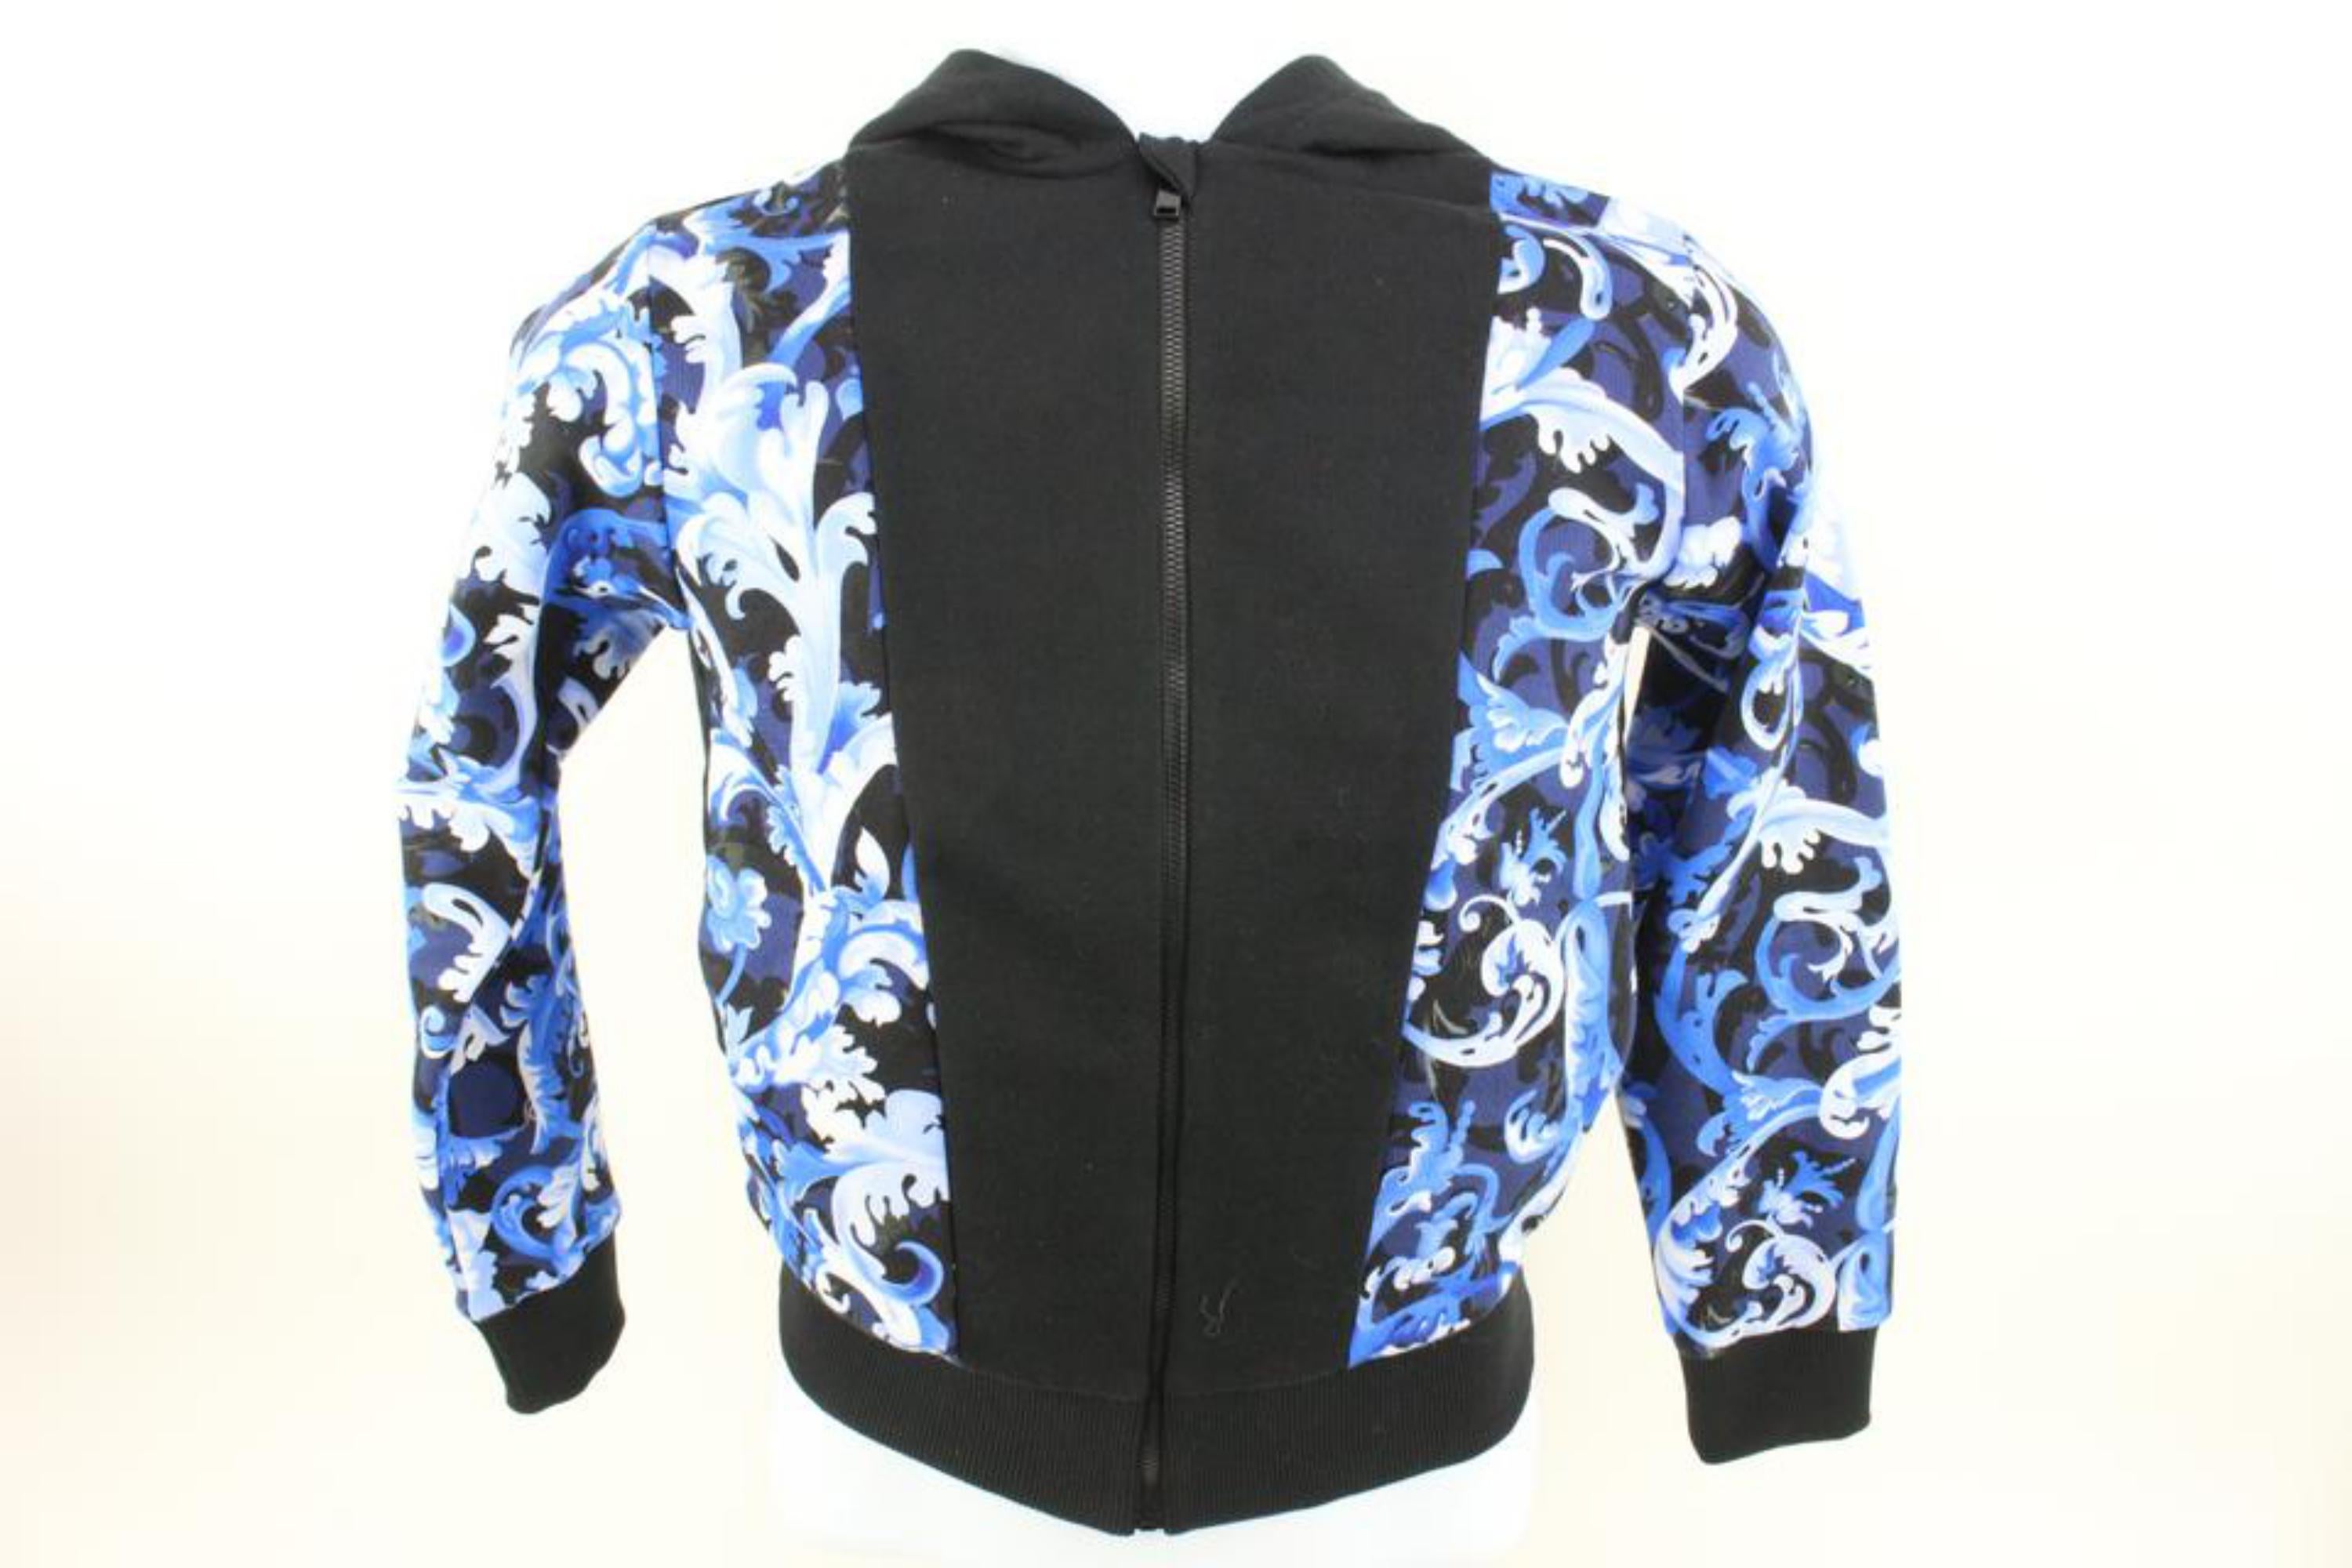 Versace Size 10A Boy's Black Blue Baroque Zip Up Hoodie Sweatshirt Kid 121v39
Code de date/Numéro de série : 044DB412F66B81
Fabriqué en : Italie
Mesures : Longueur :  16.5